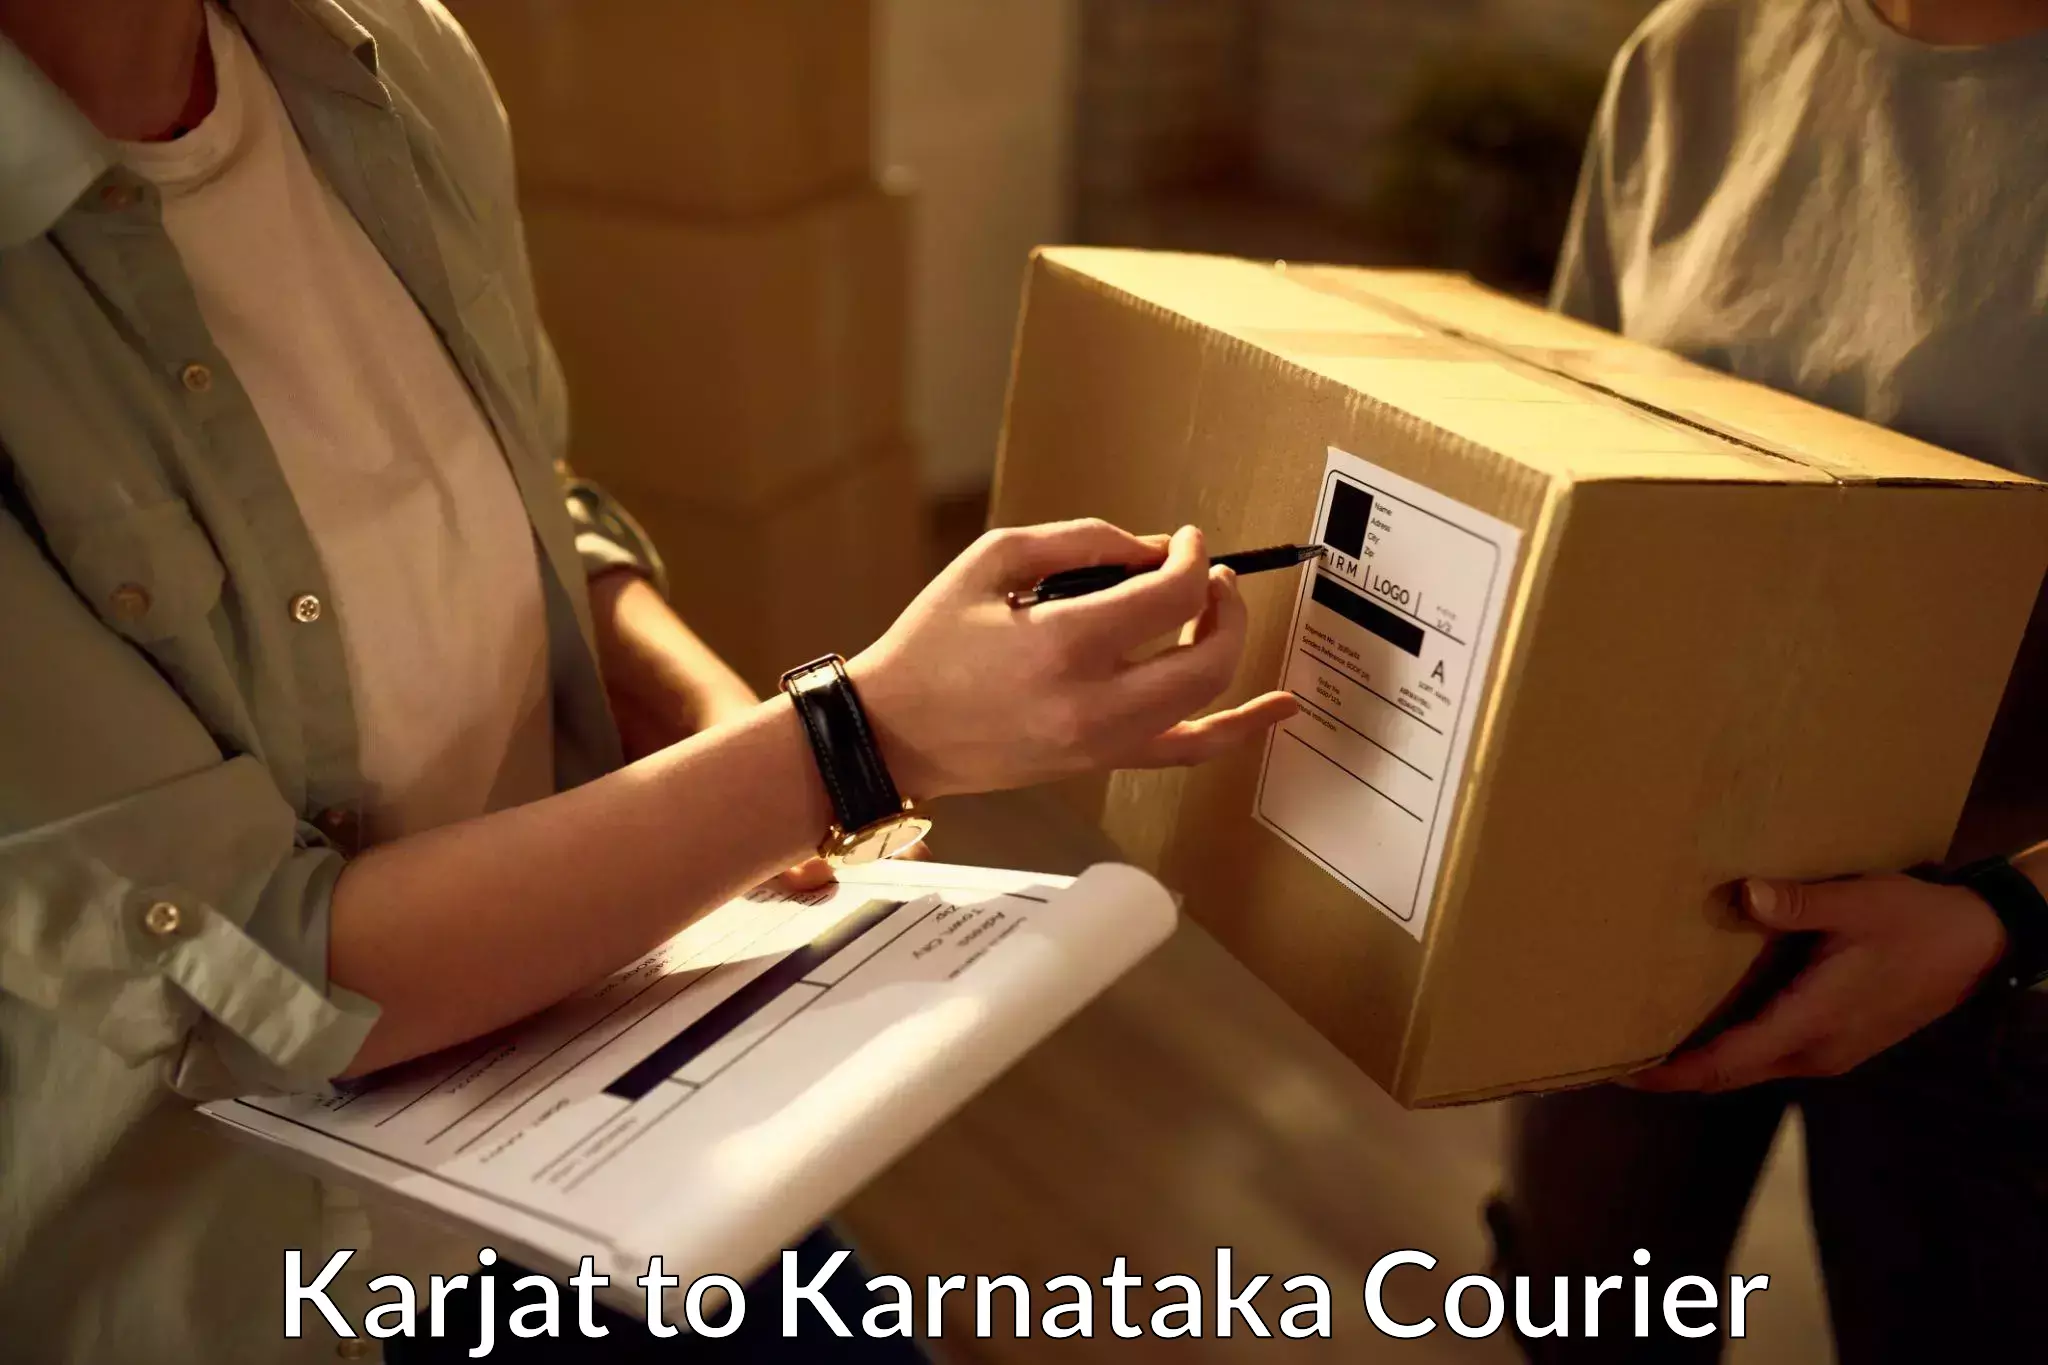 Urgent courier needs Karjat to Anavatti